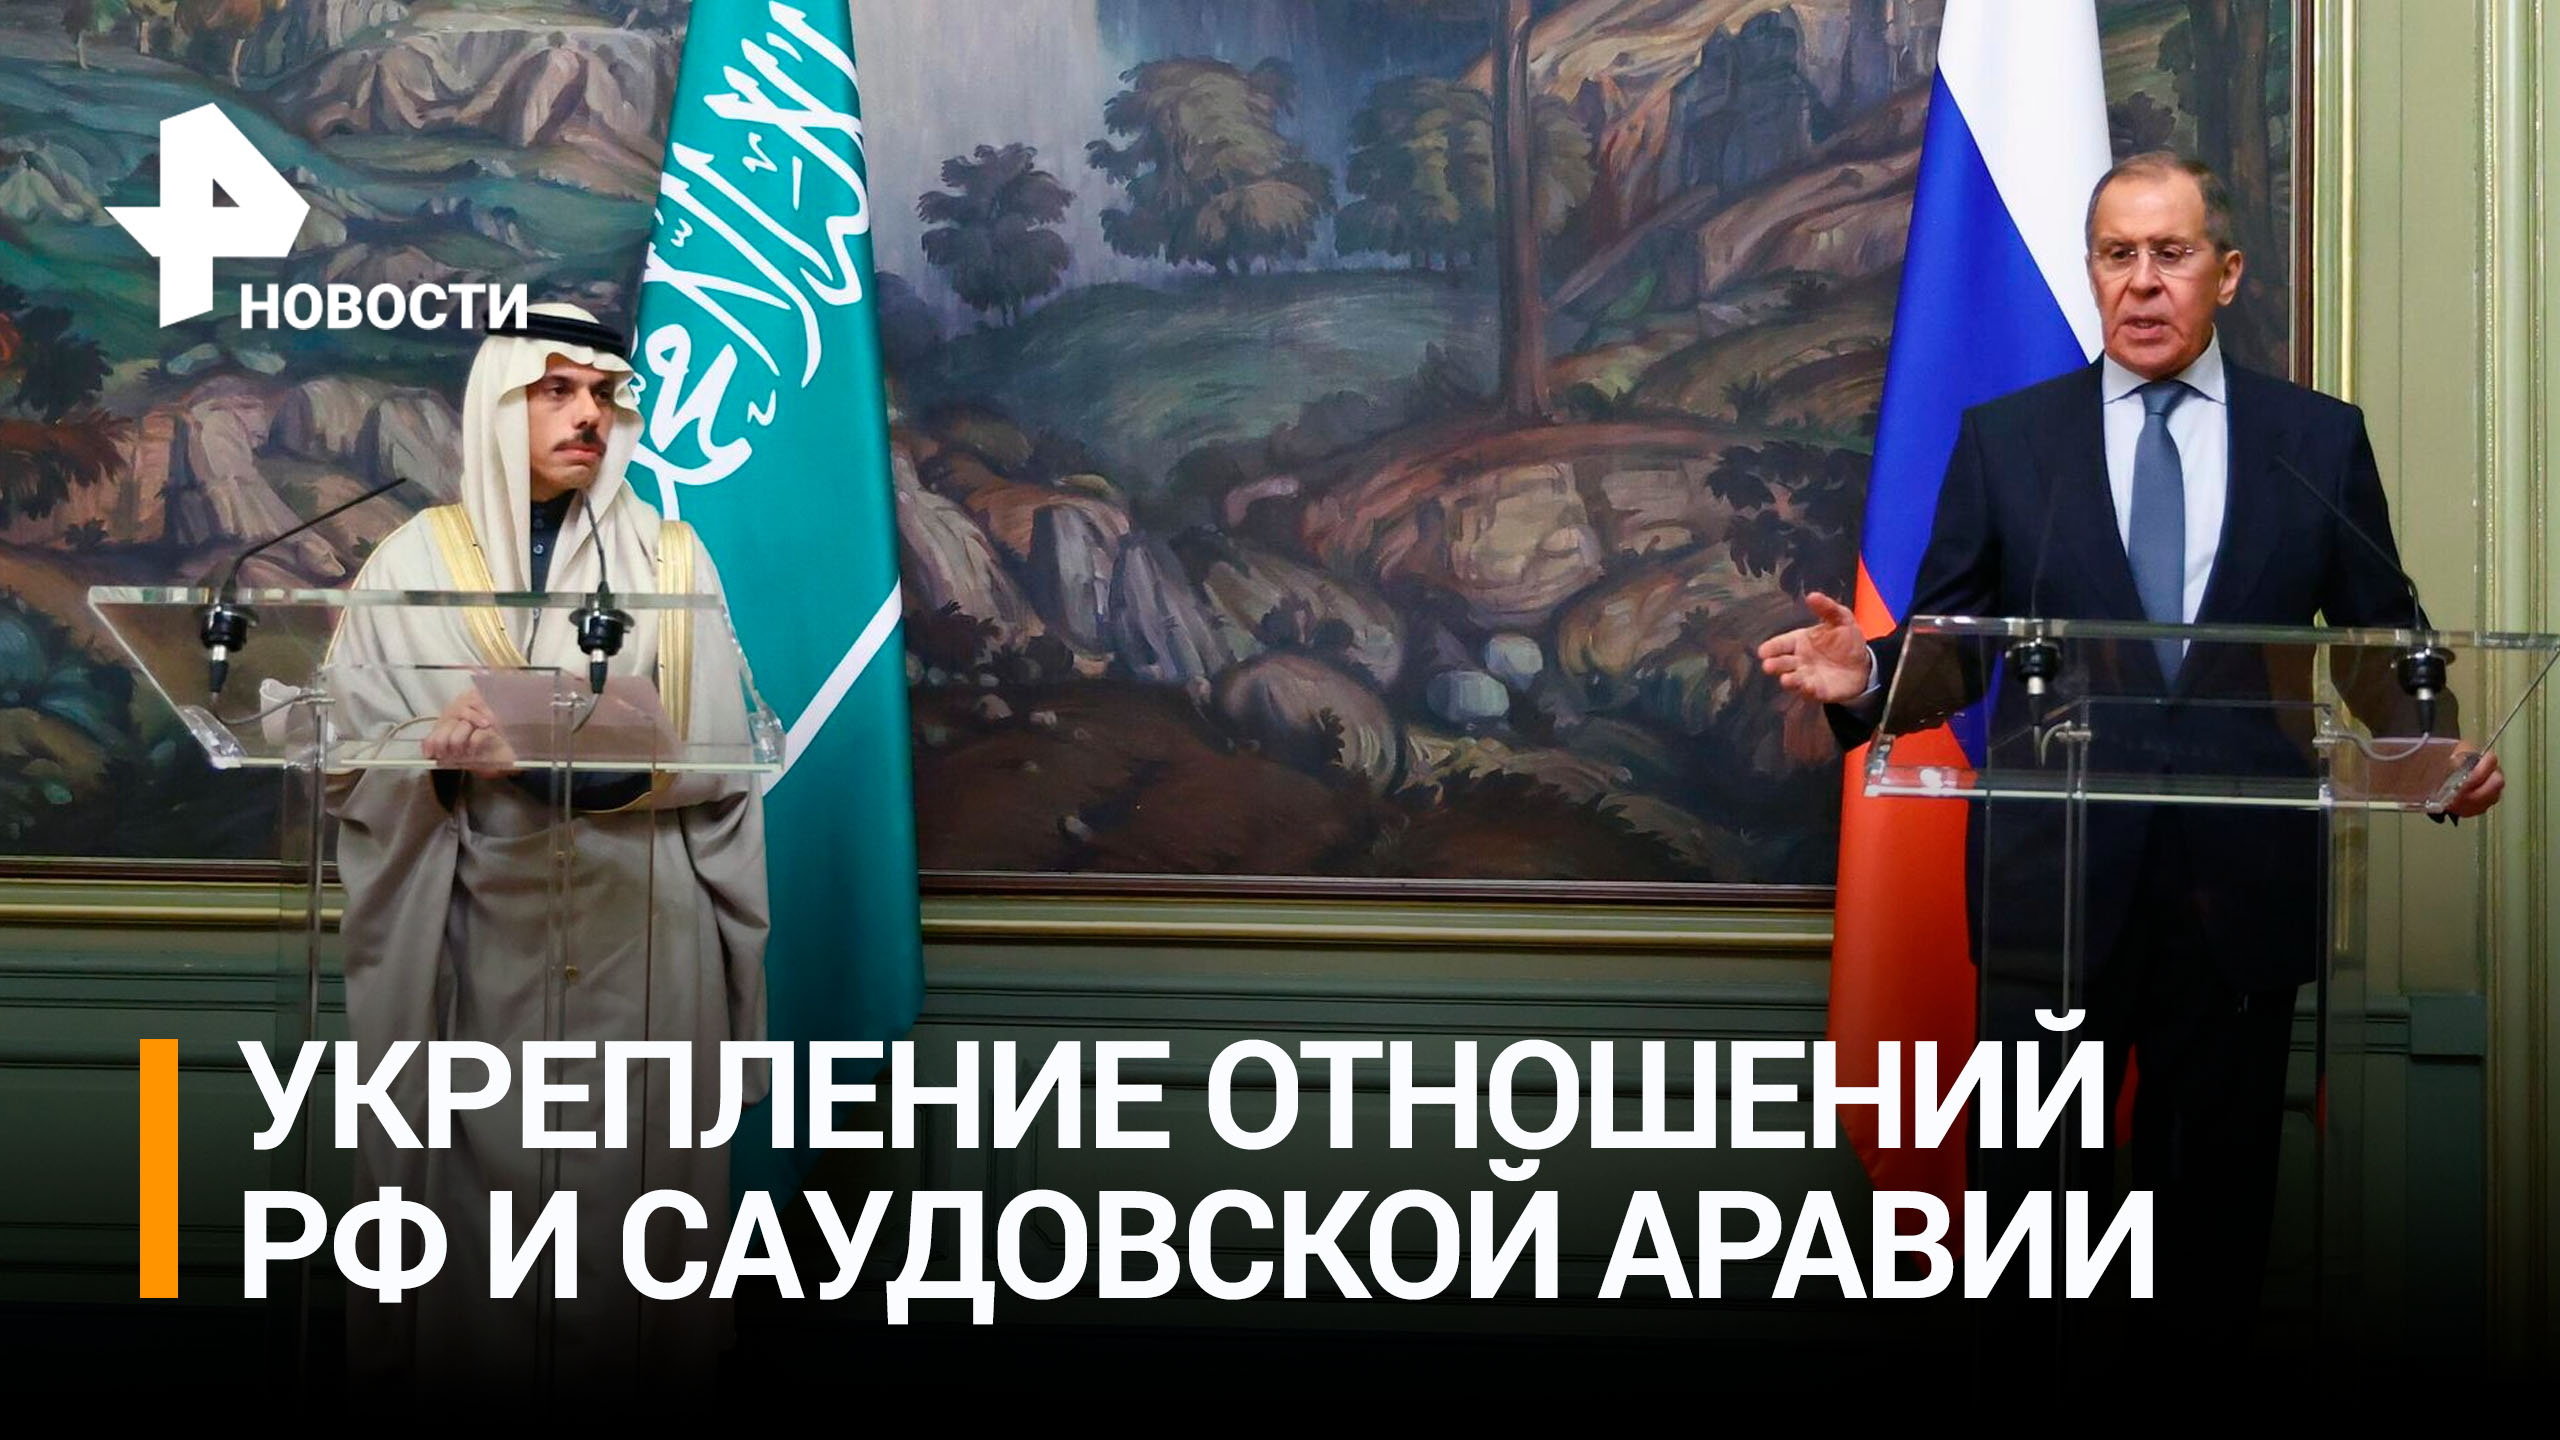 Лавров и глава МИД Саудовской Аравии обсудили укрепление двусторонних отношений